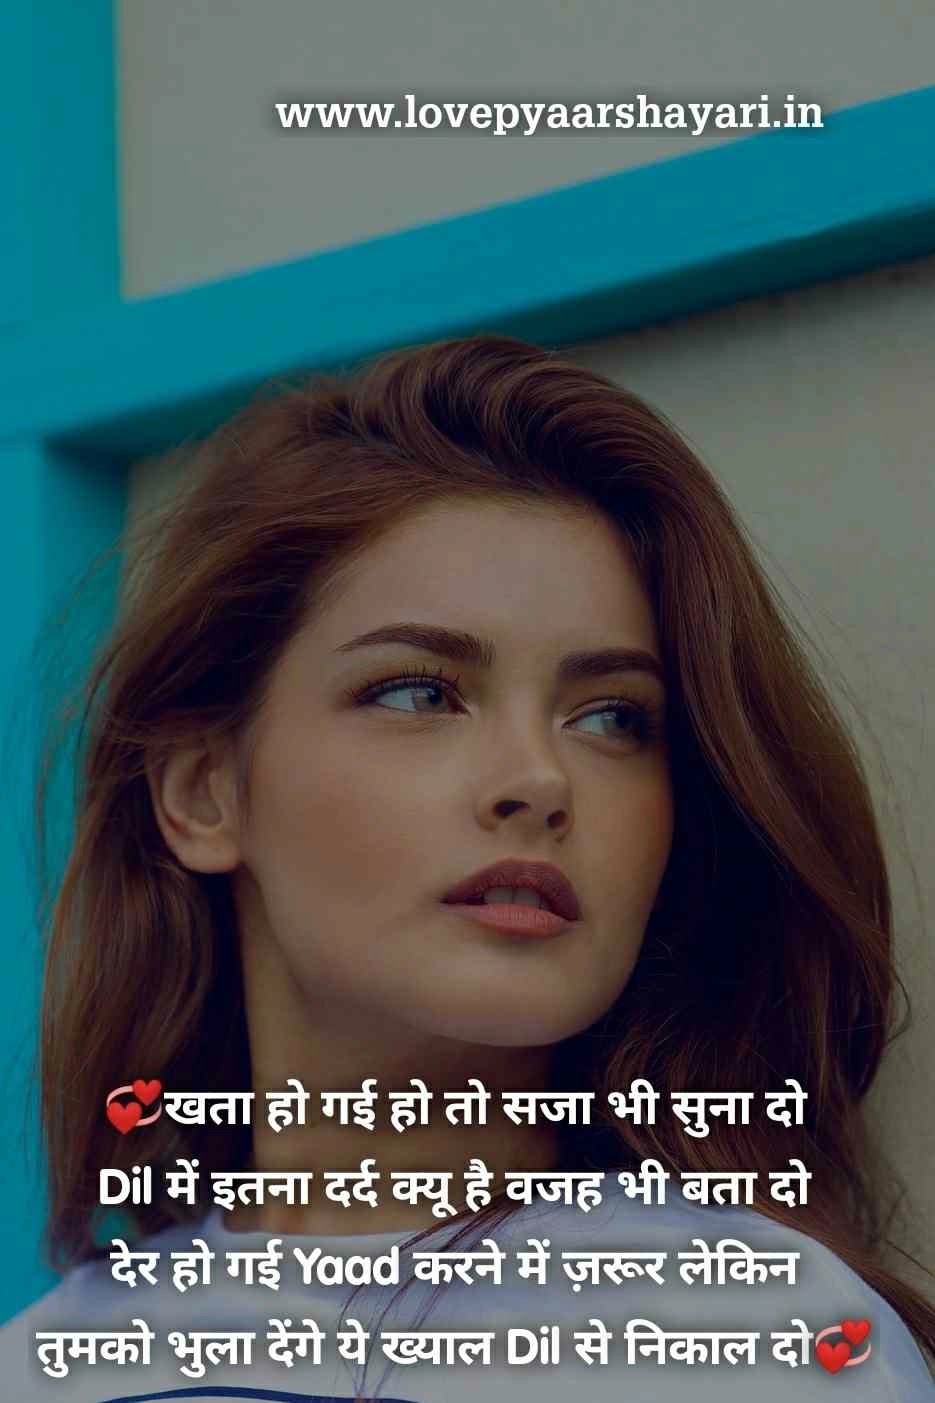 Sorry shayari in Hindi and English for BF and GF, images